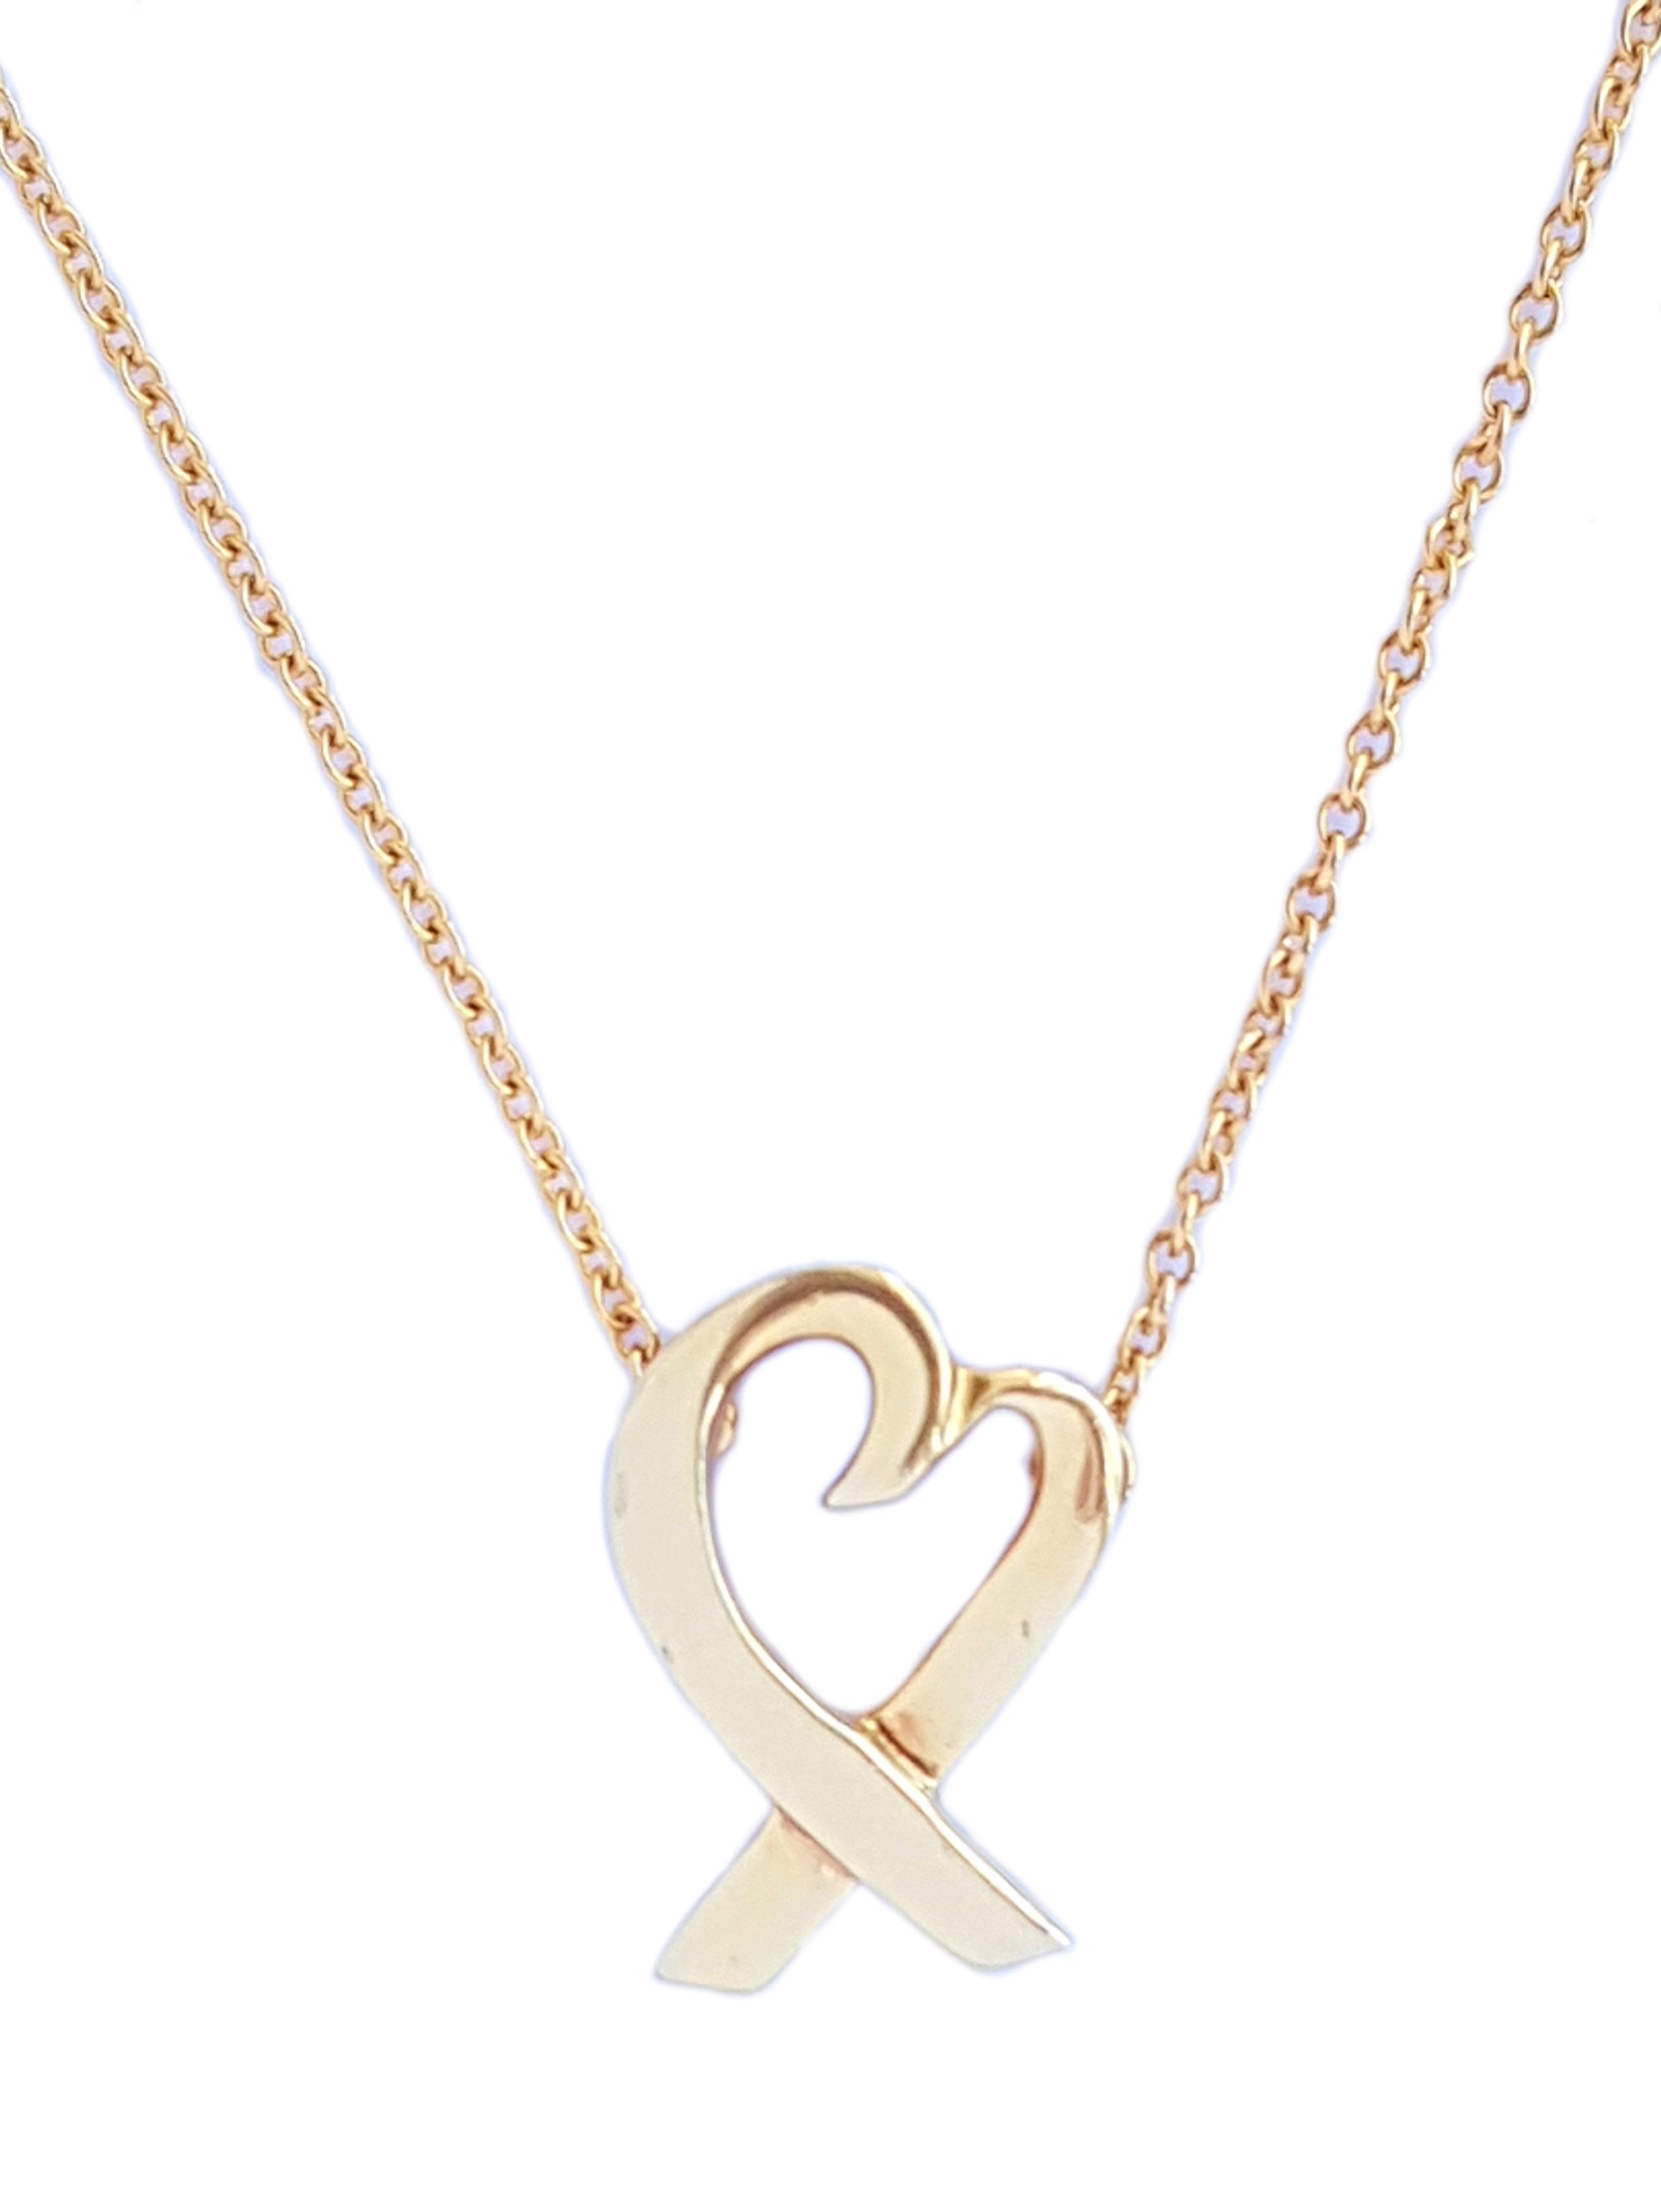 Tiffany & Co Paloma Picasso 750 Loving Heart Necklace 14mm Medium